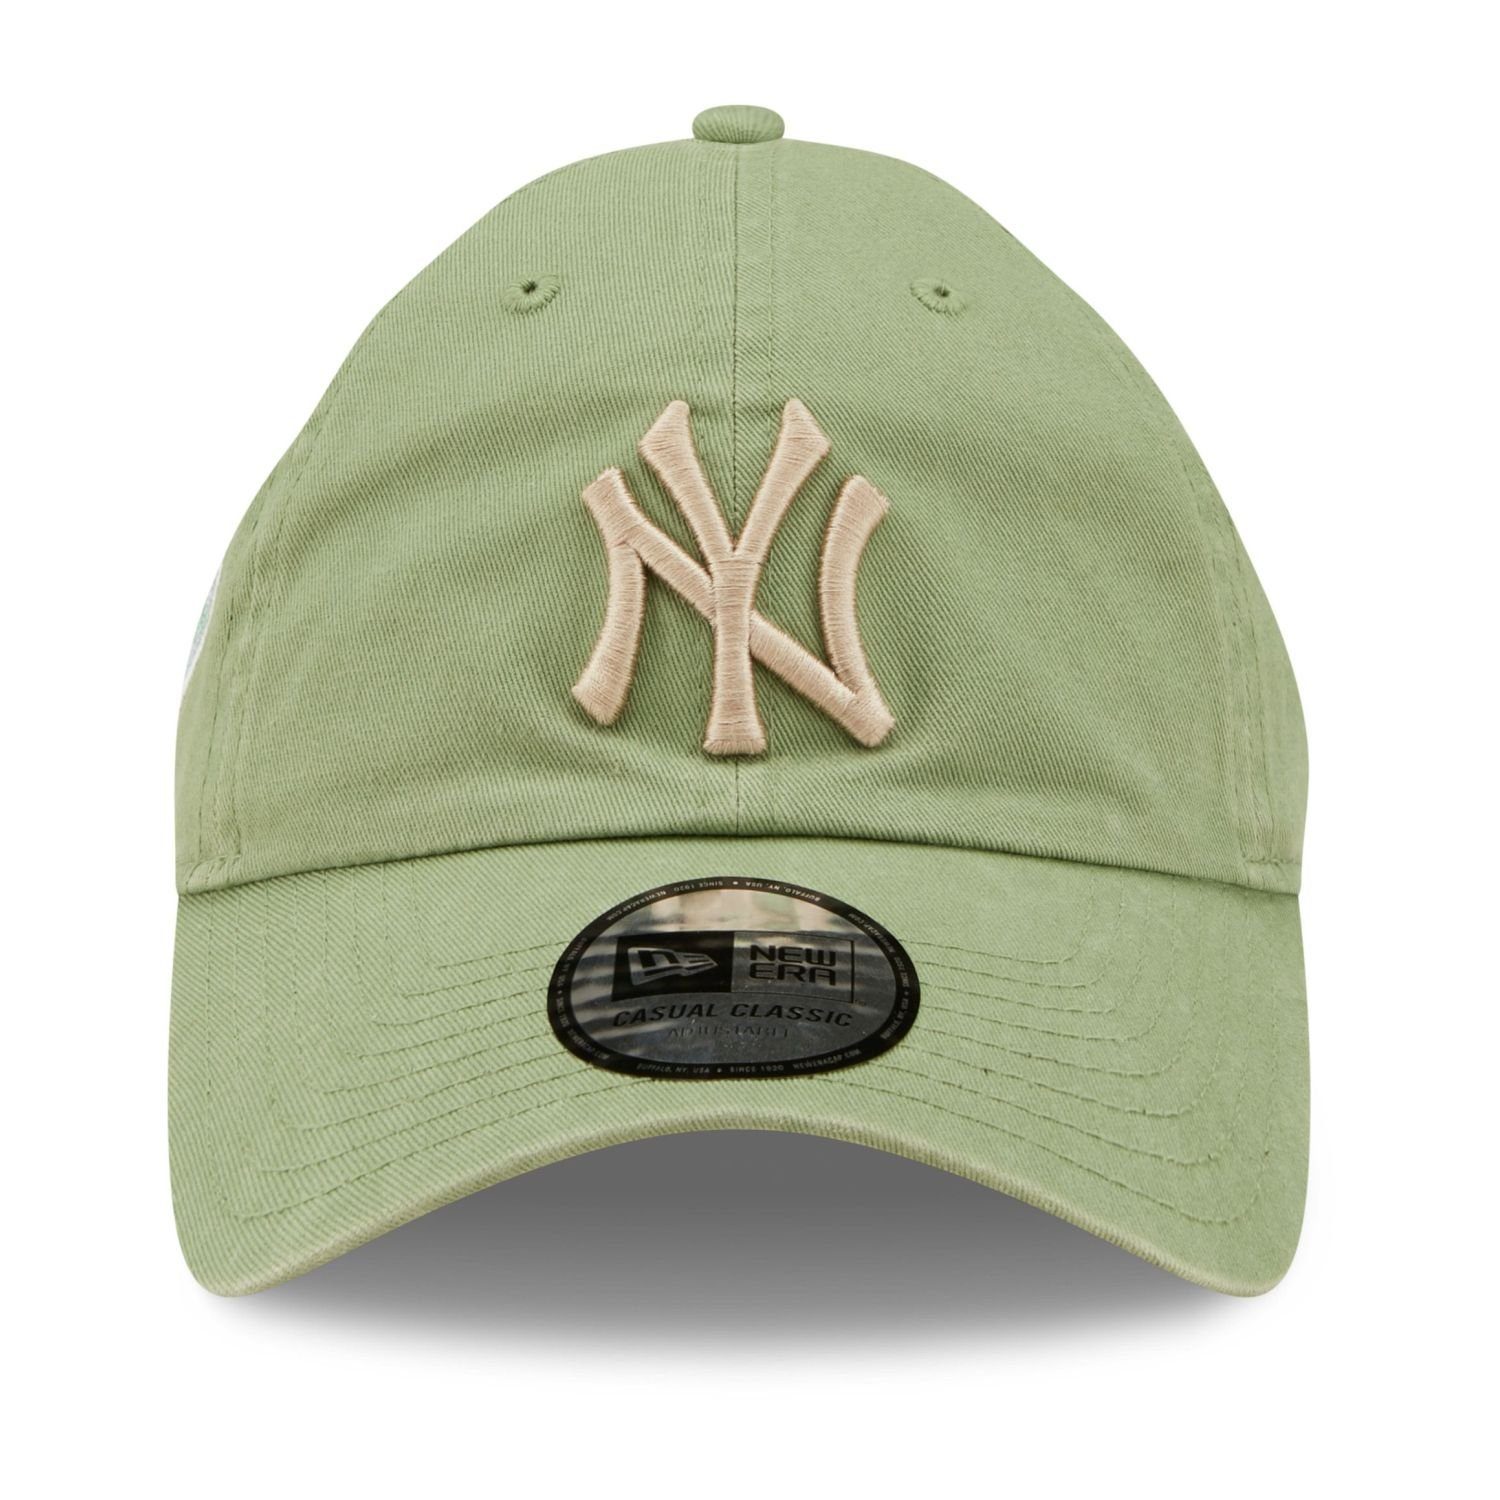 New Cap New Casual Classics Baseball Era York Yankees jade